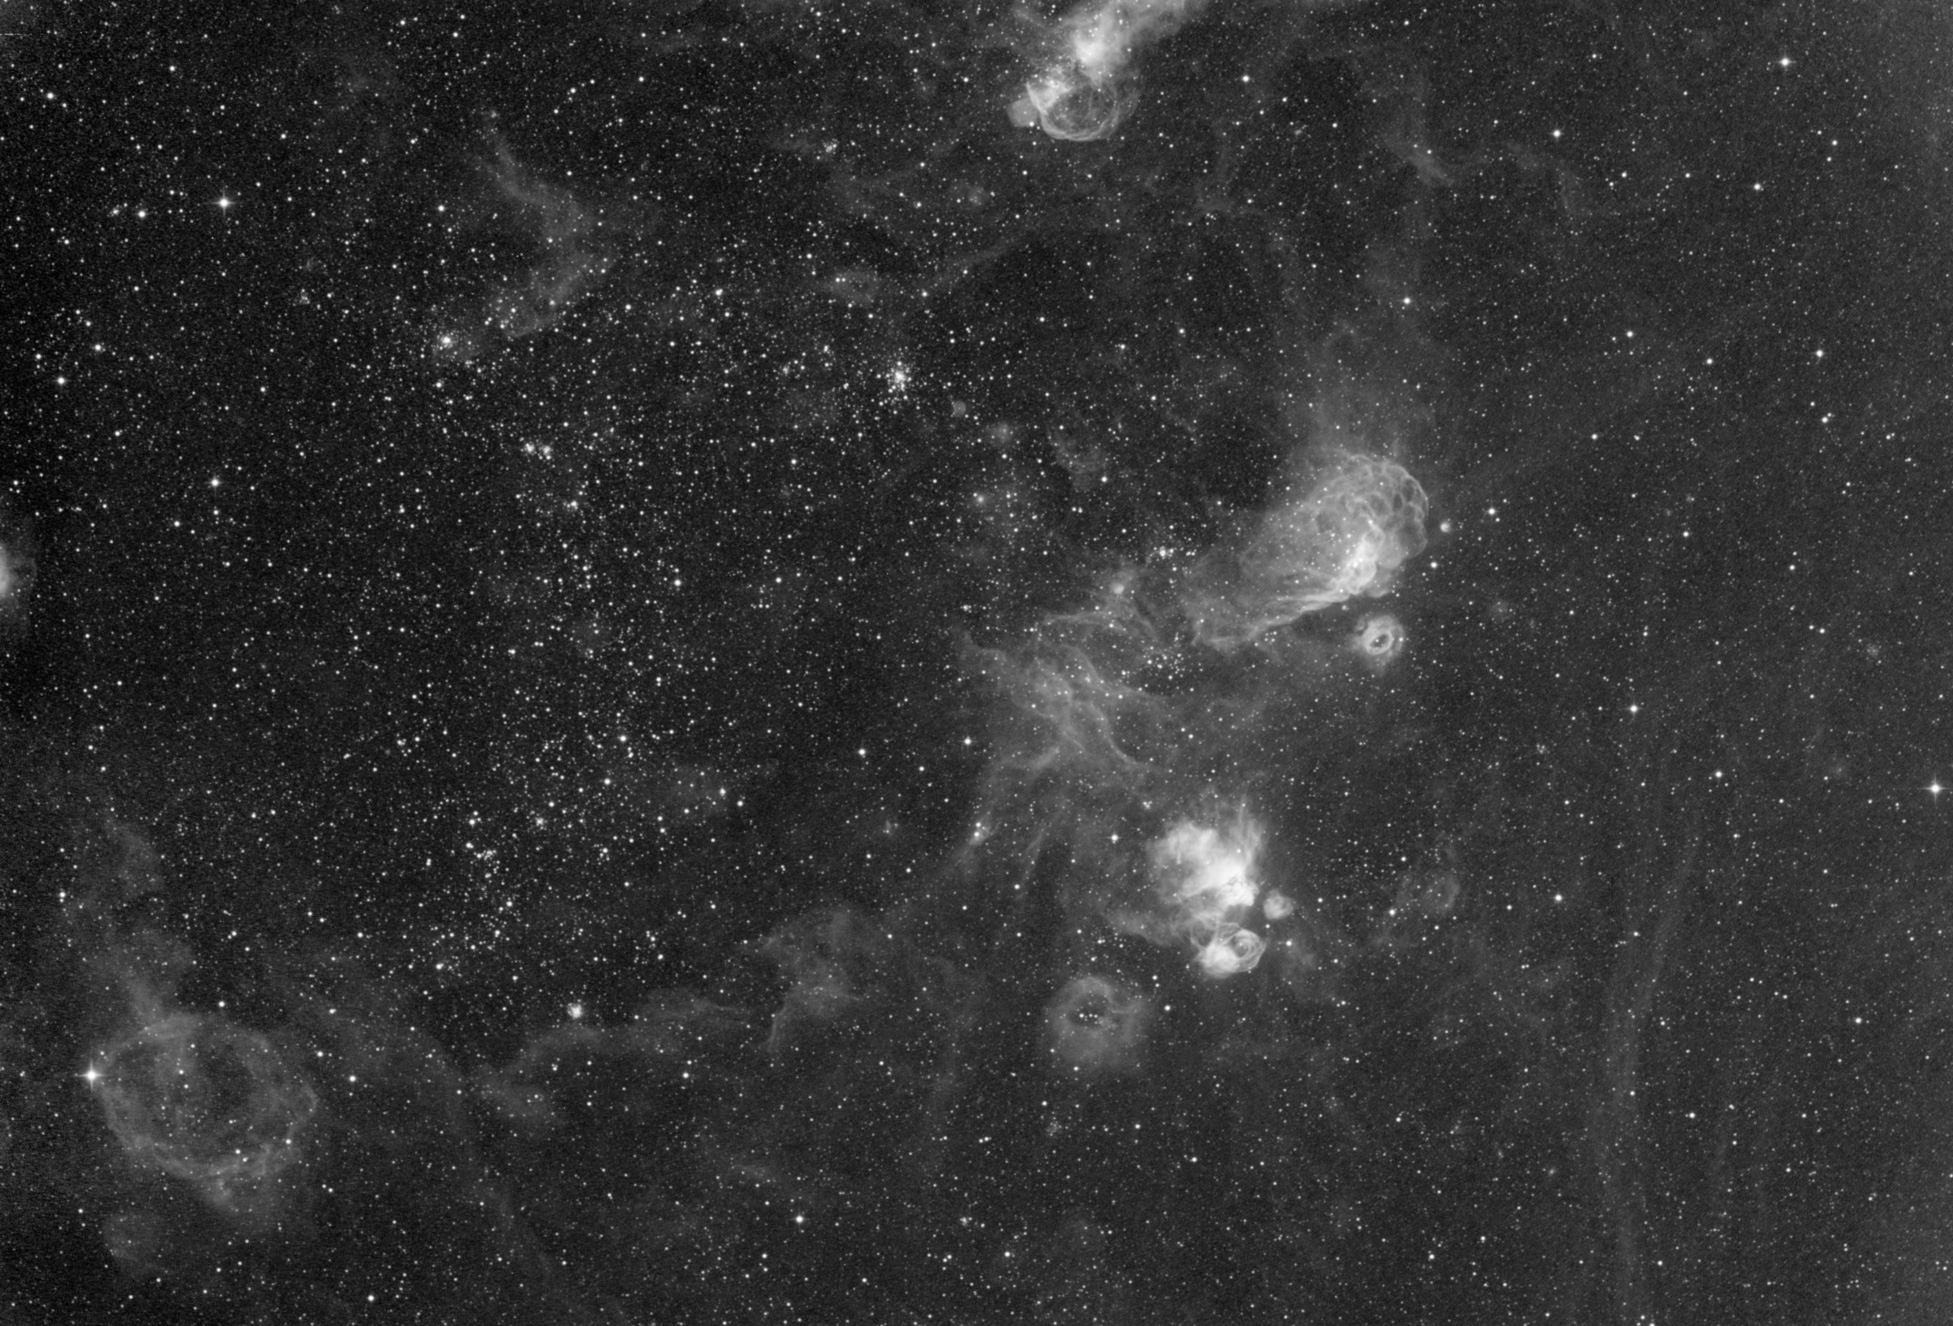 Henize 55 / NGC 2014